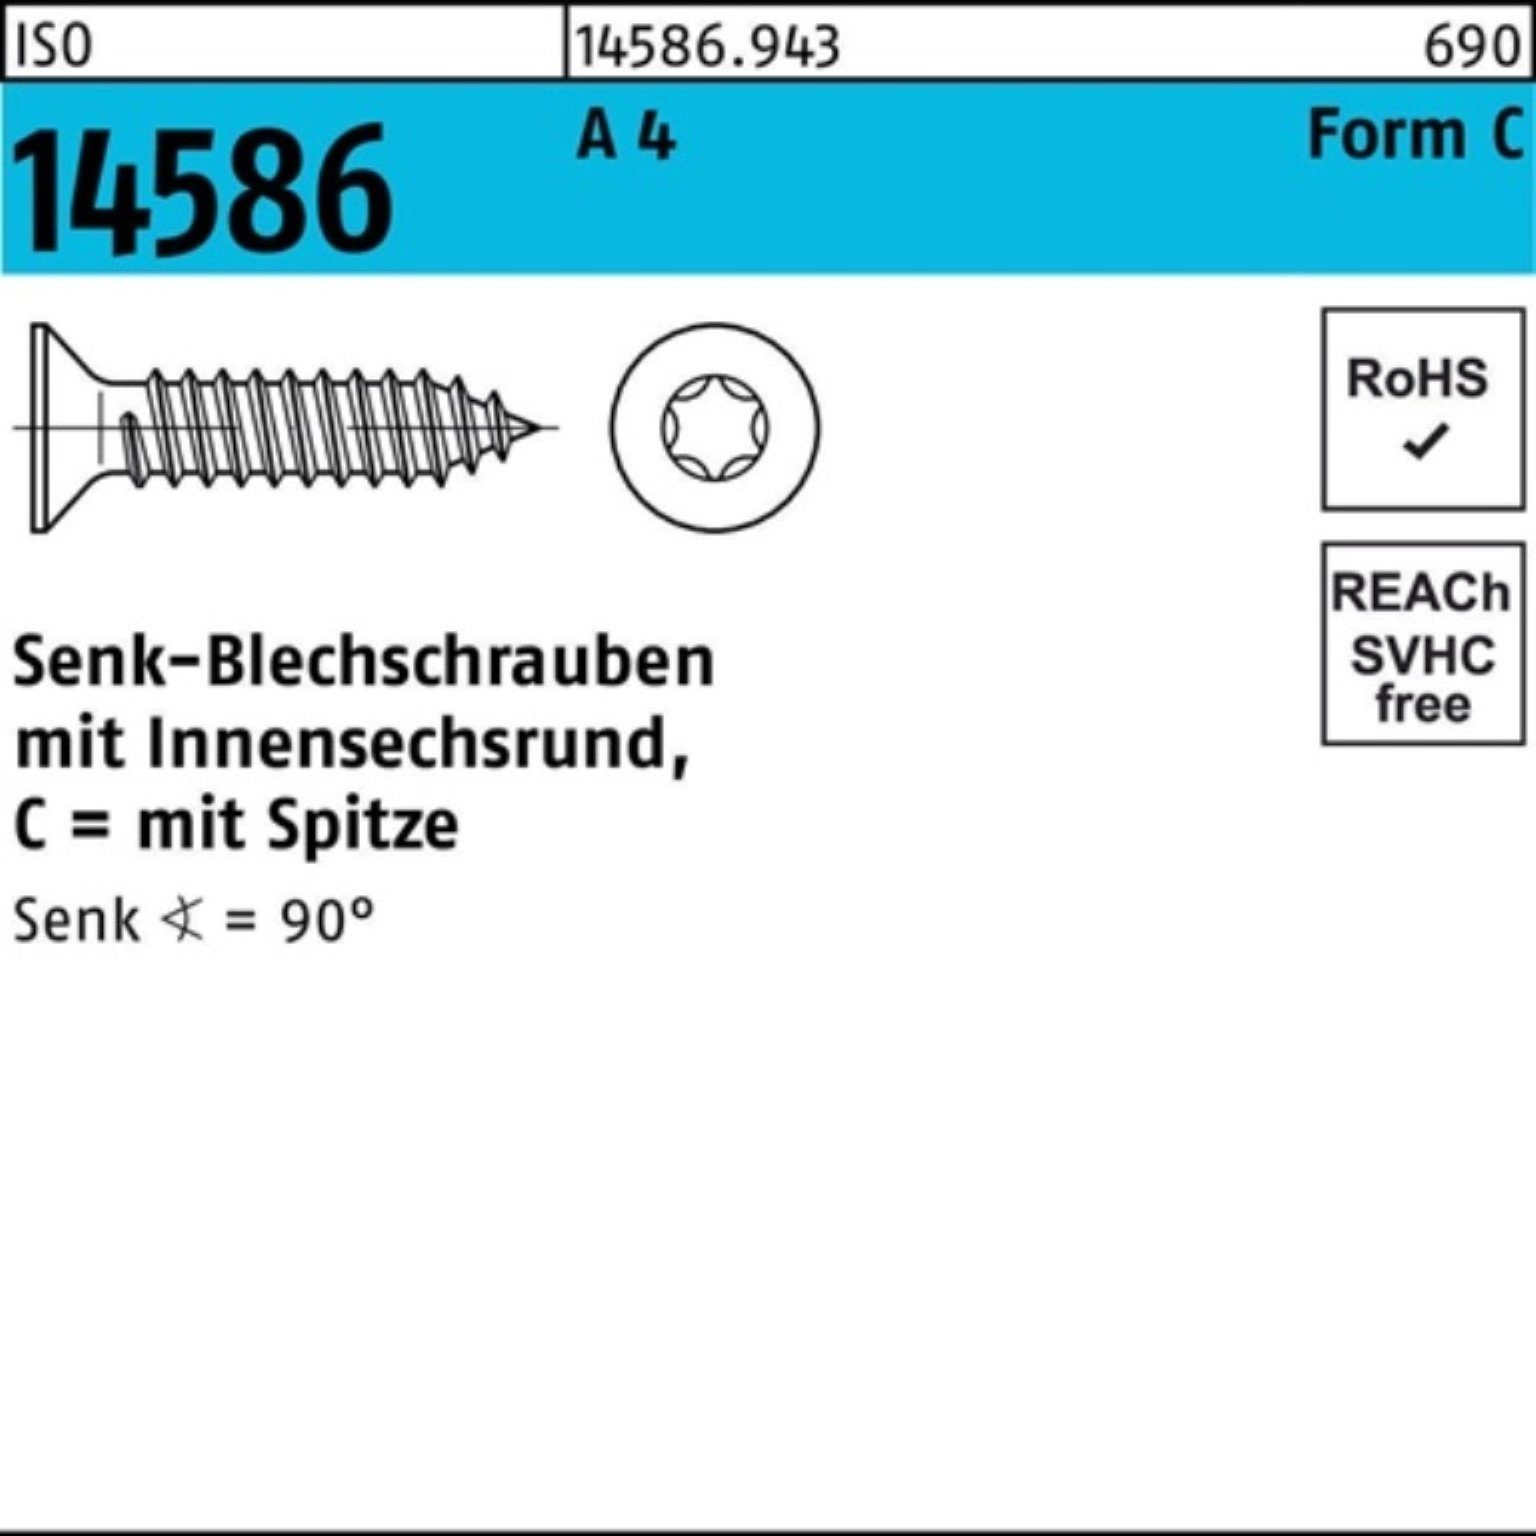 A ISO Senkblechschraube 100 4 13-T15 Schraube Reyher ISR/Spitze 14586 Pack 3,9x 1000er